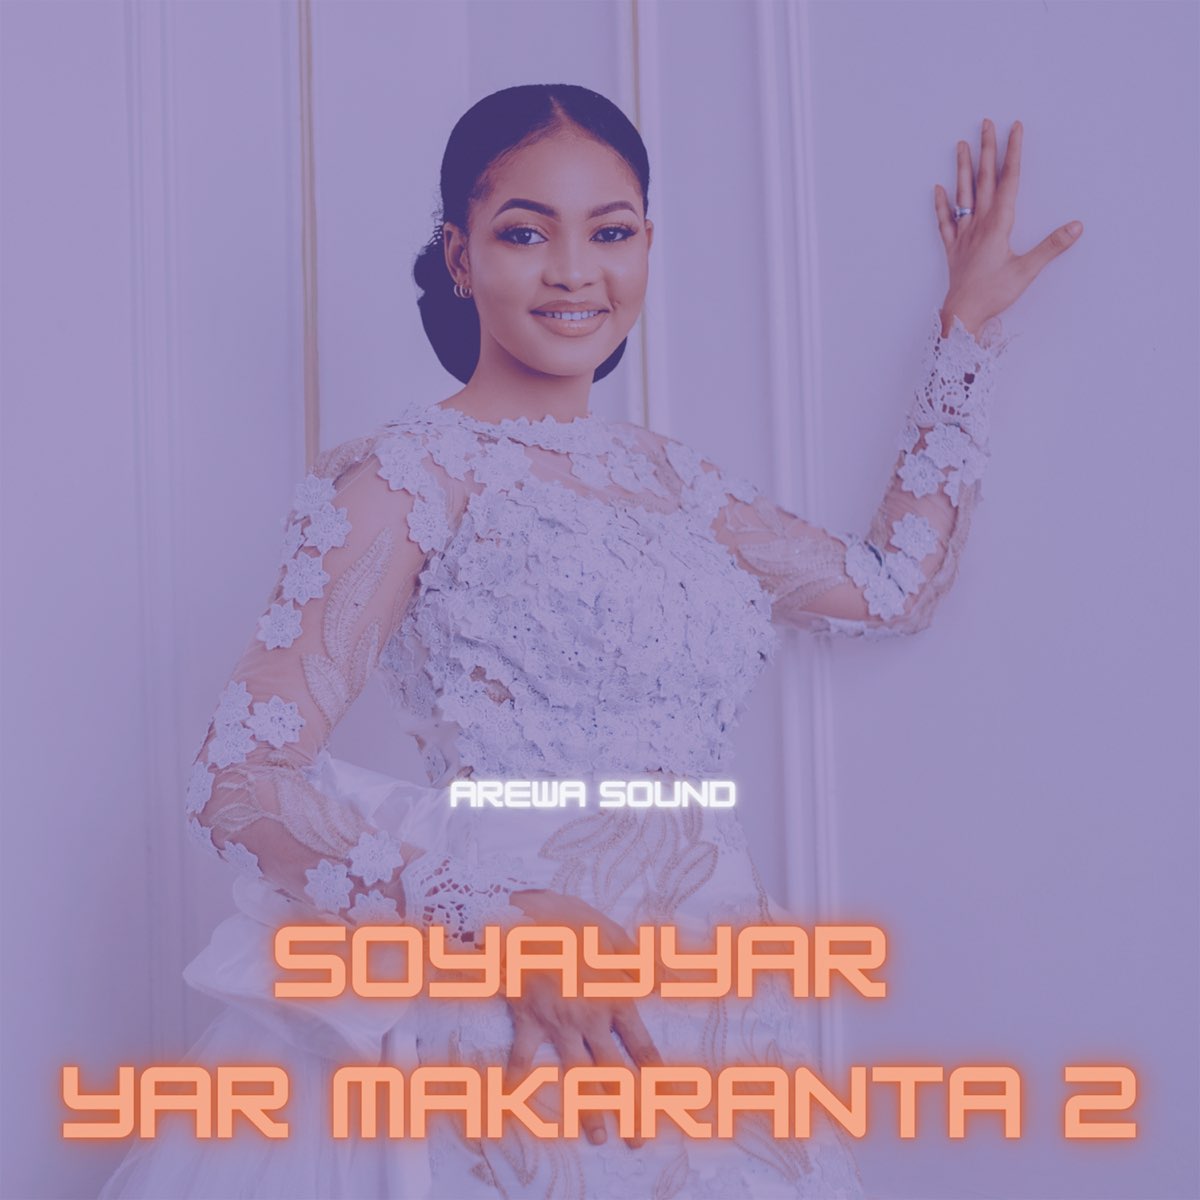 Soyayyar Yar Makaranta 2 - Single by Arewa Sound on Apple Music